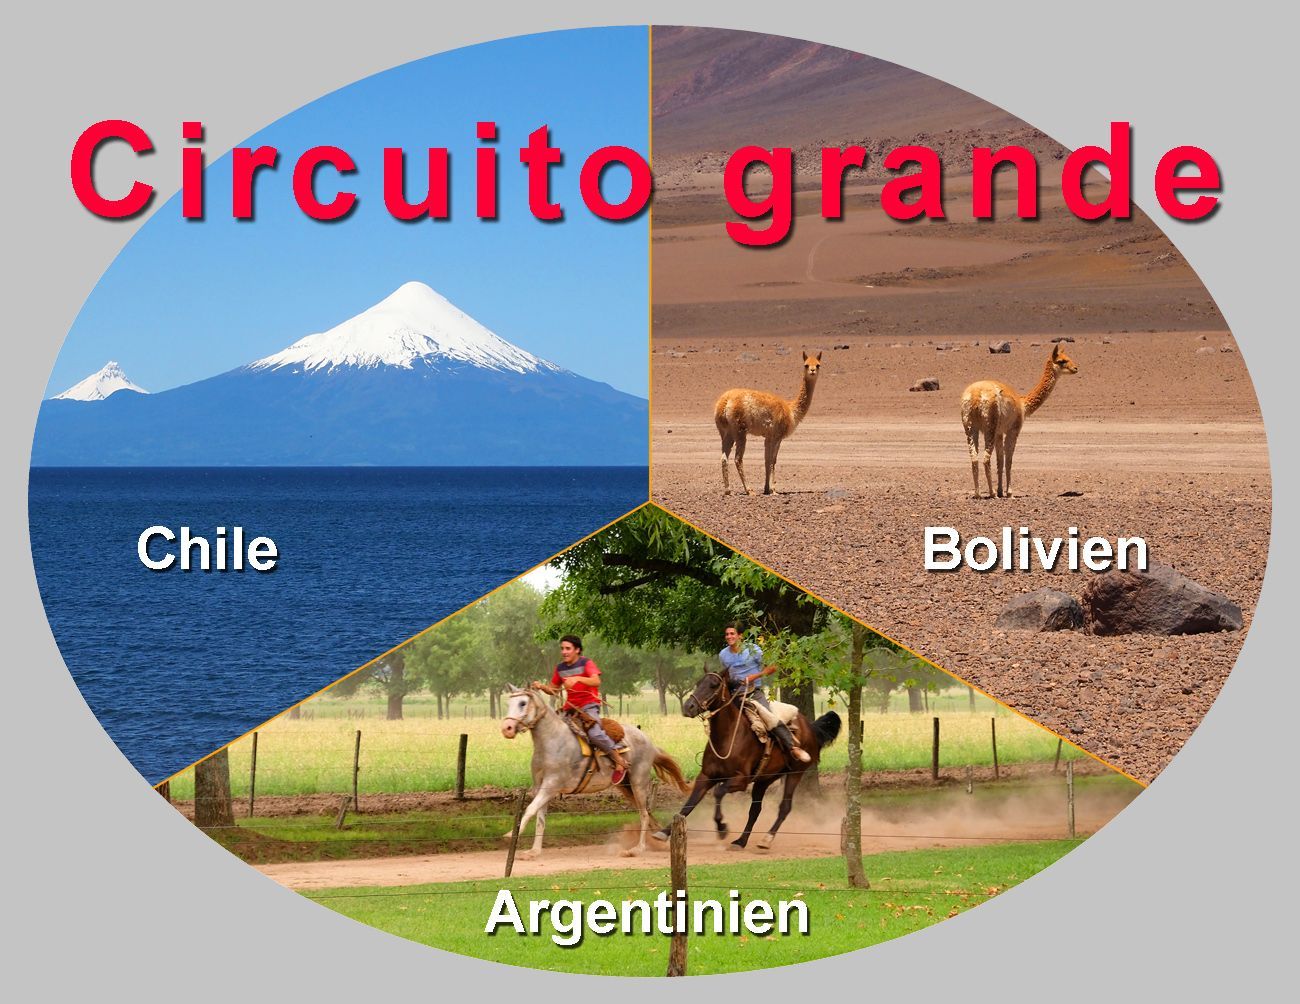 Circuito grande: Chile, Bolivien, Argentinien